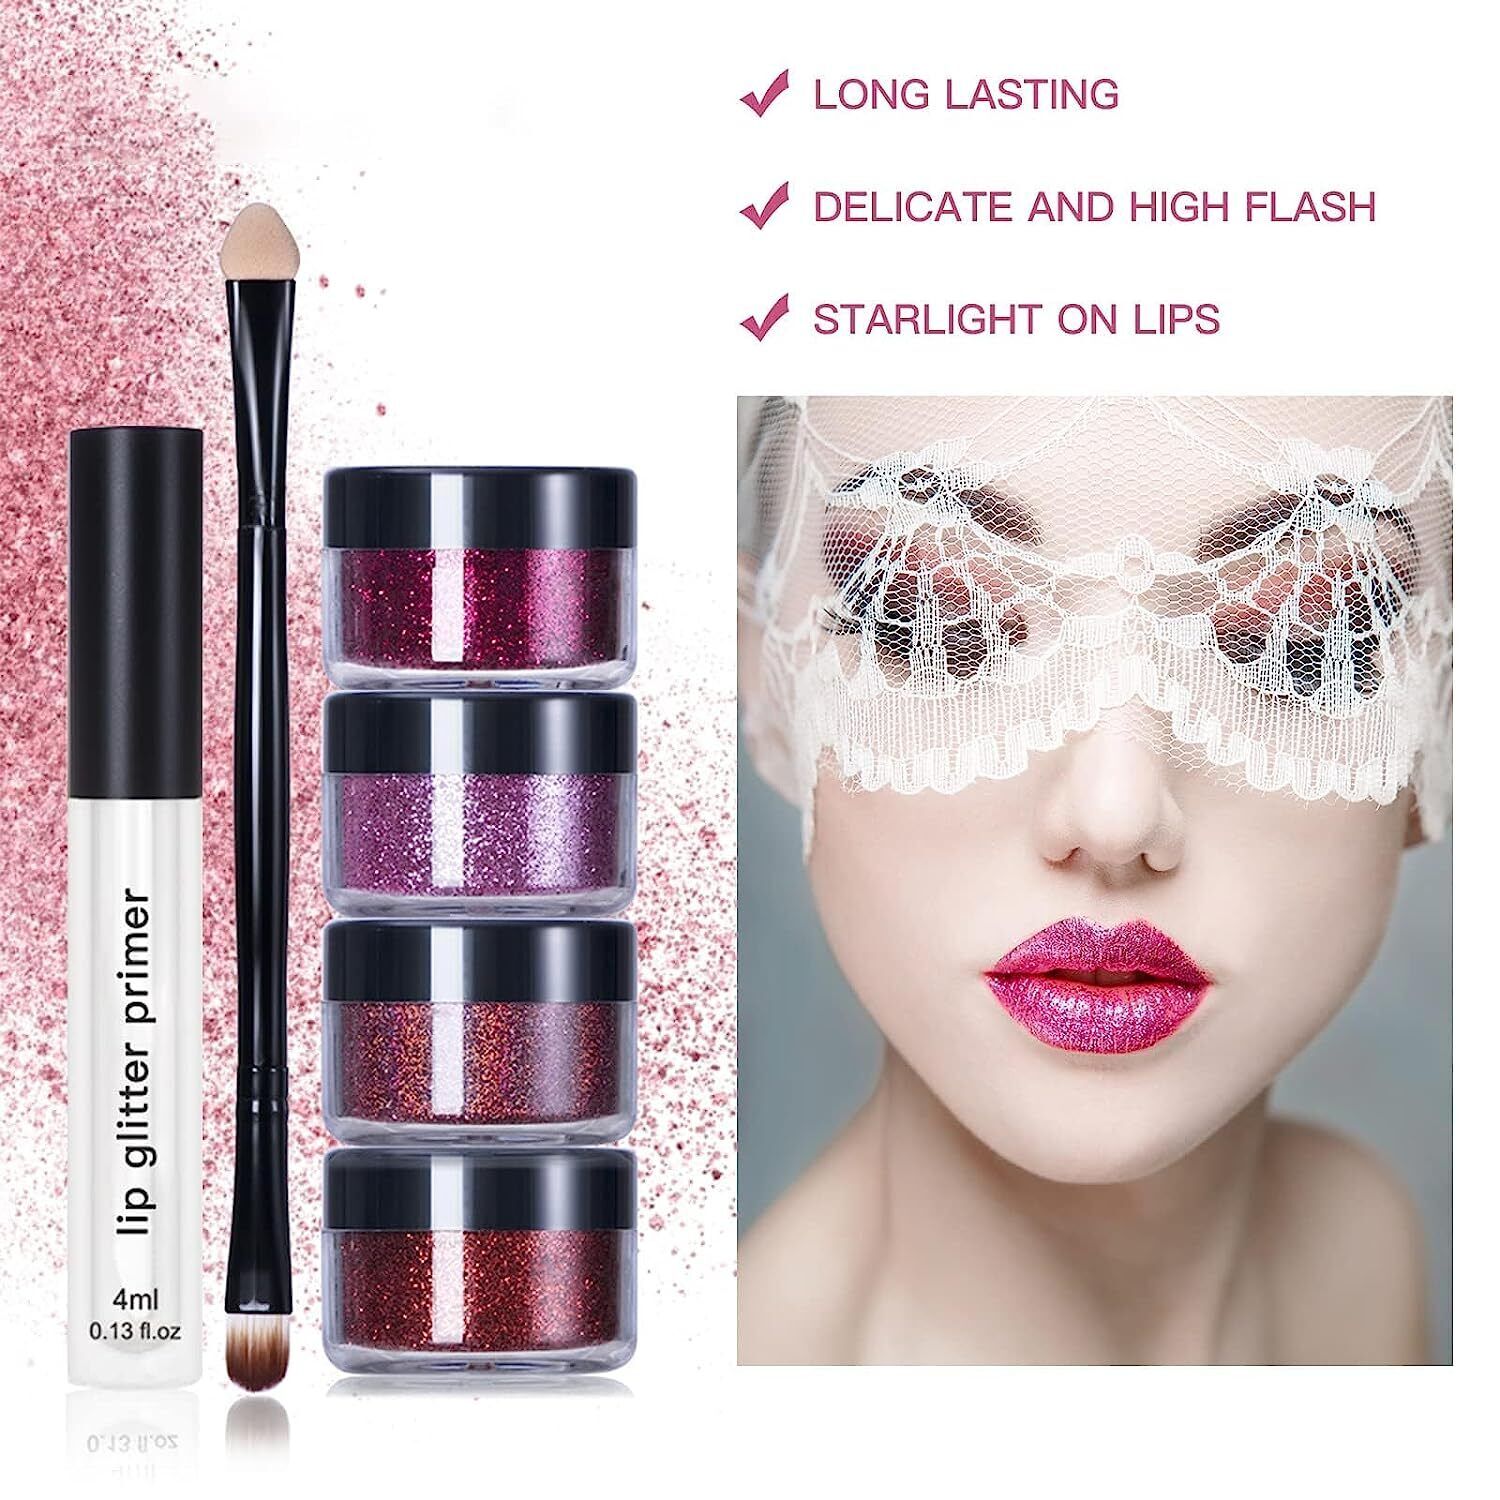 French Kisses - Glitterlicious Lip kit